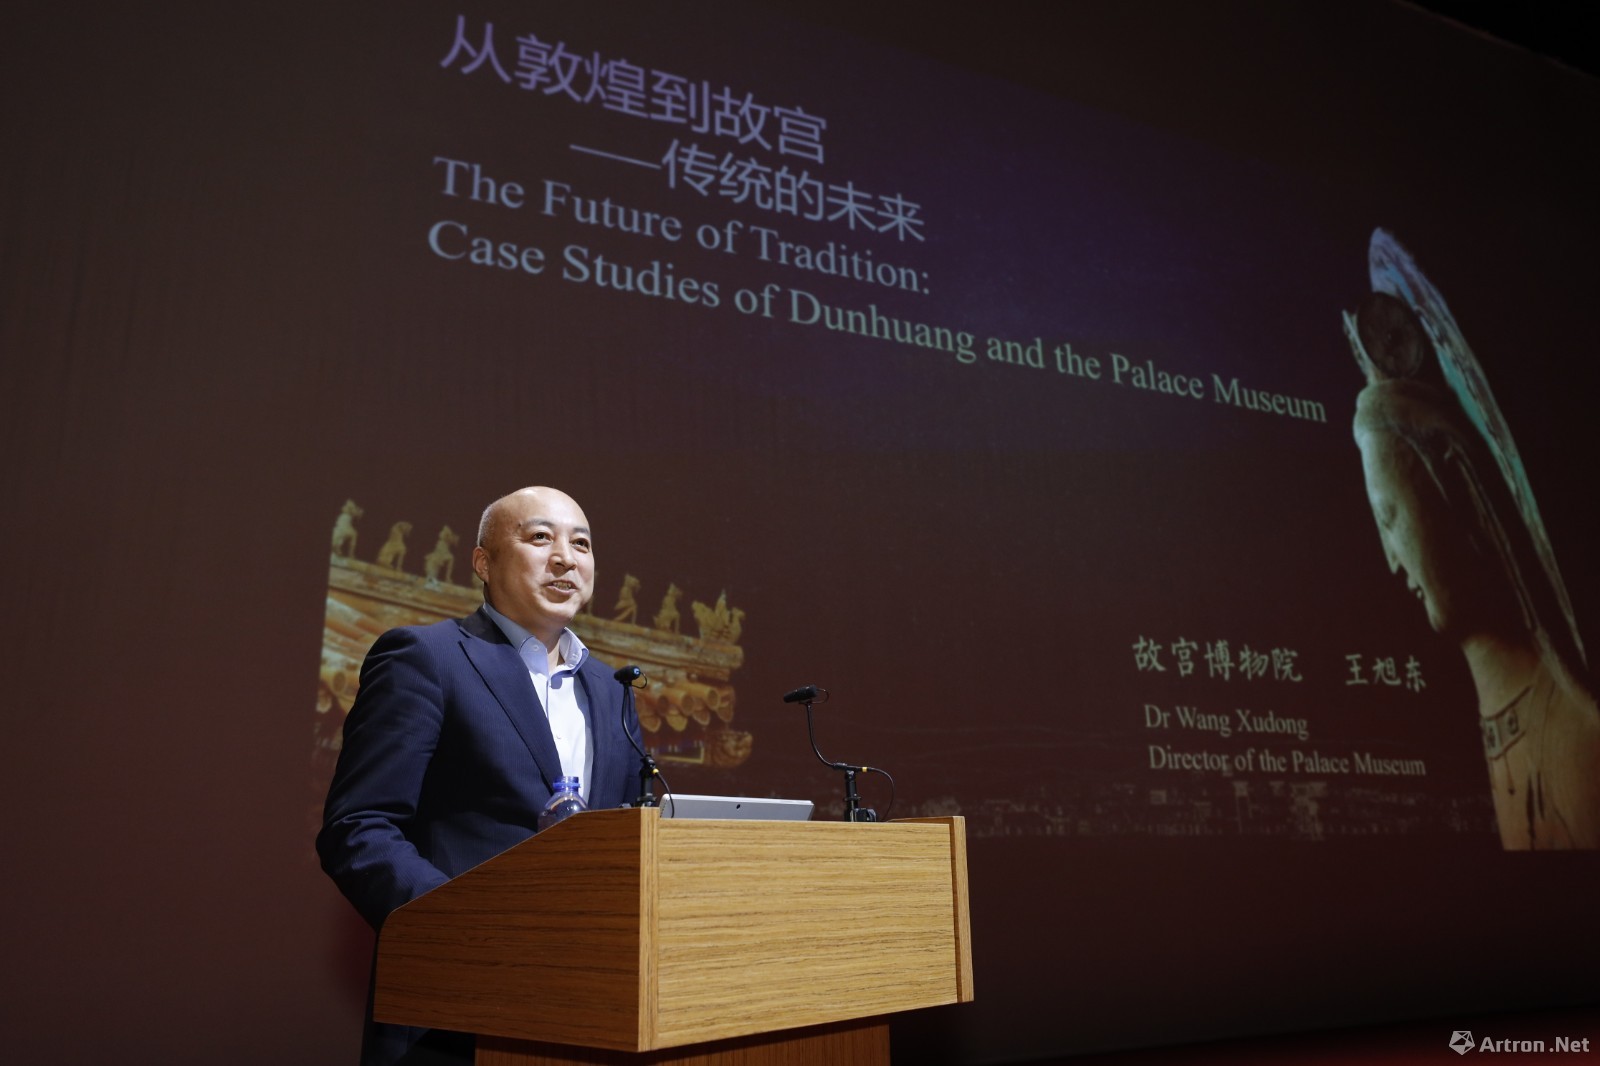 故宫博物院院长王旭东首次香港主题演讲：从敦煌、故宫看传统的未来